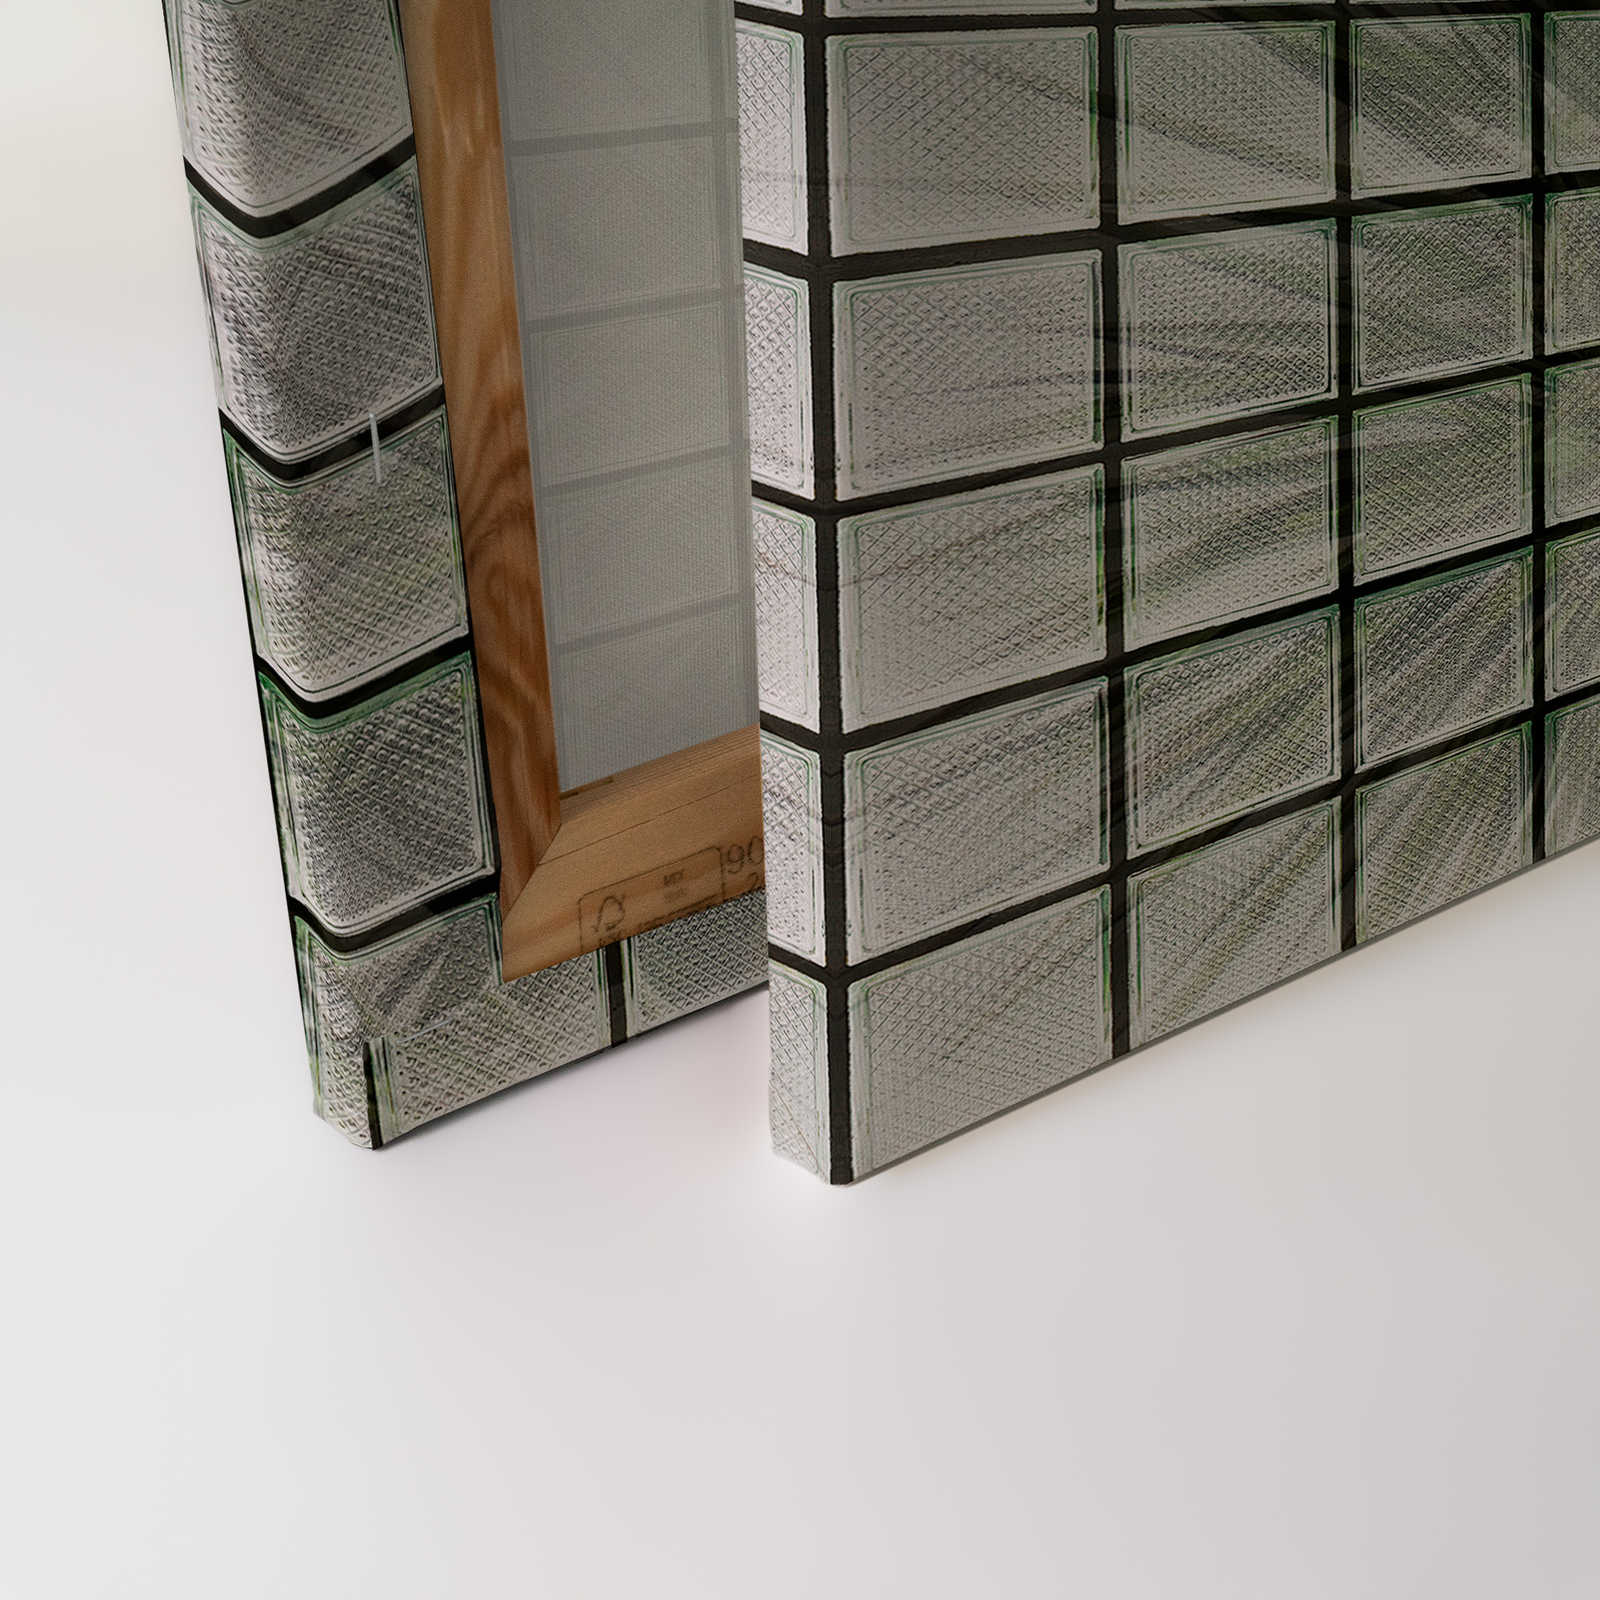             Green House 1 - Toile Palmiers & briques de verre - 1,20 m x 0,80 m
        